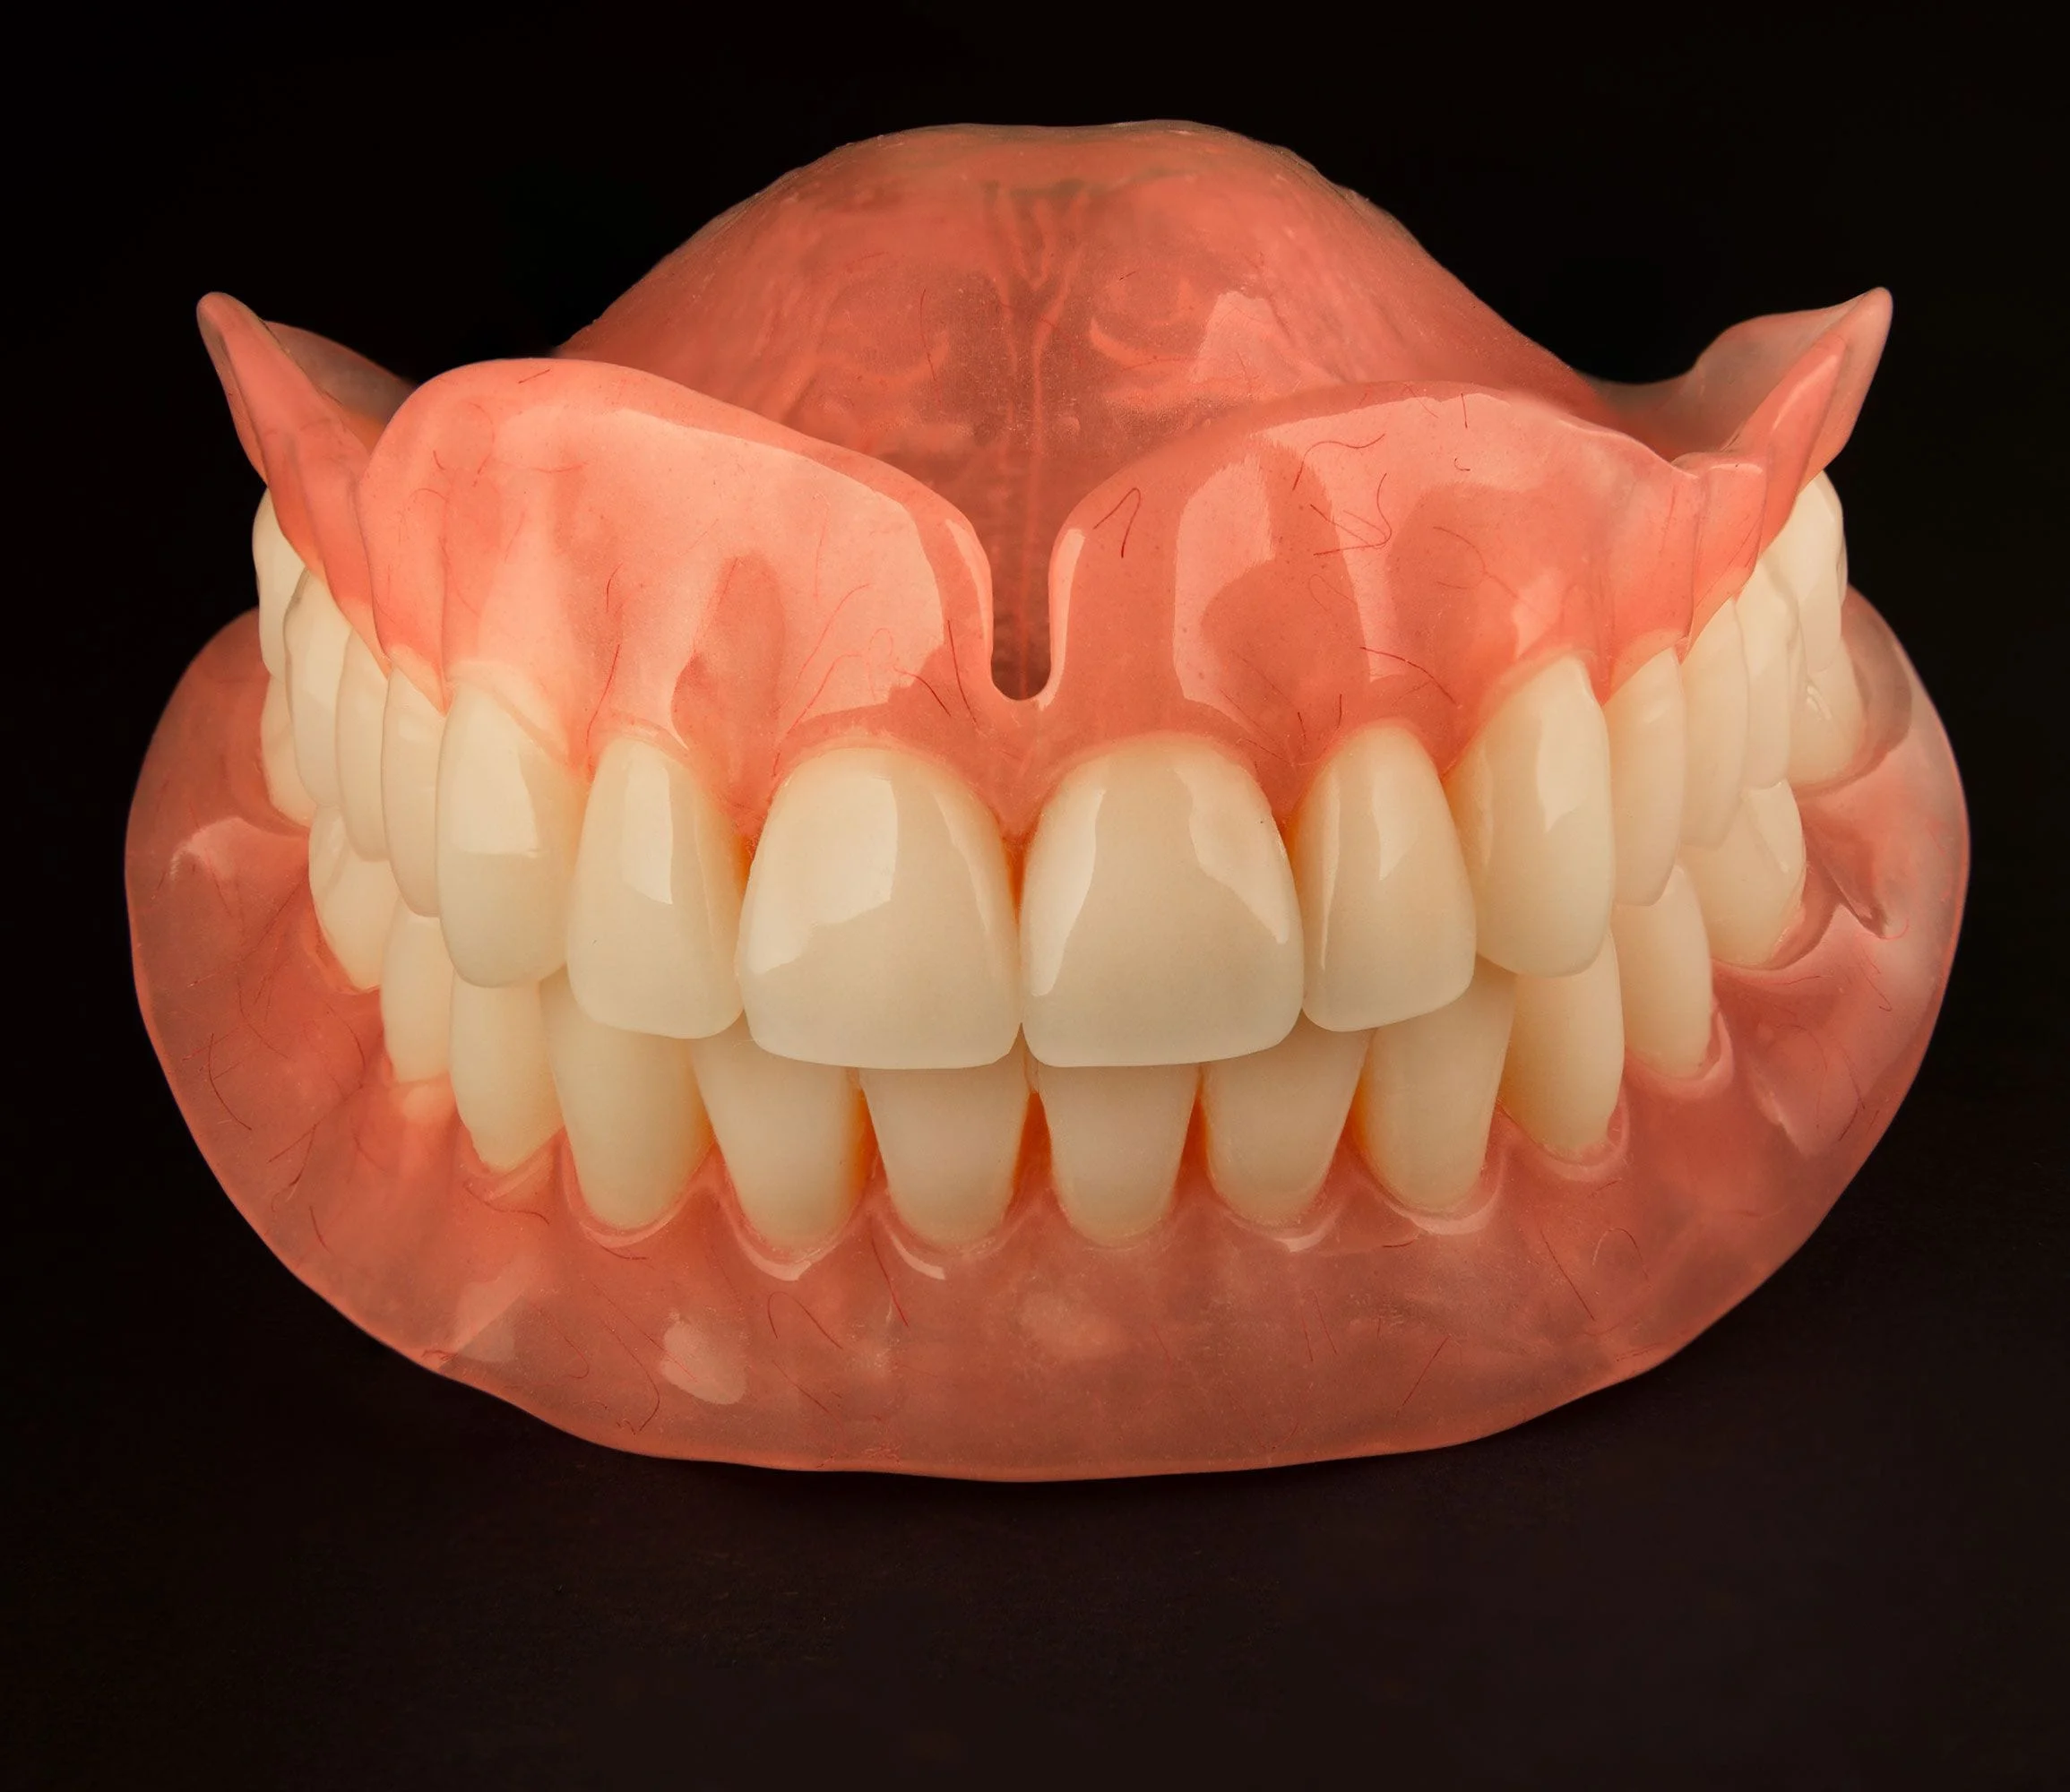 Partial/Full Dentures